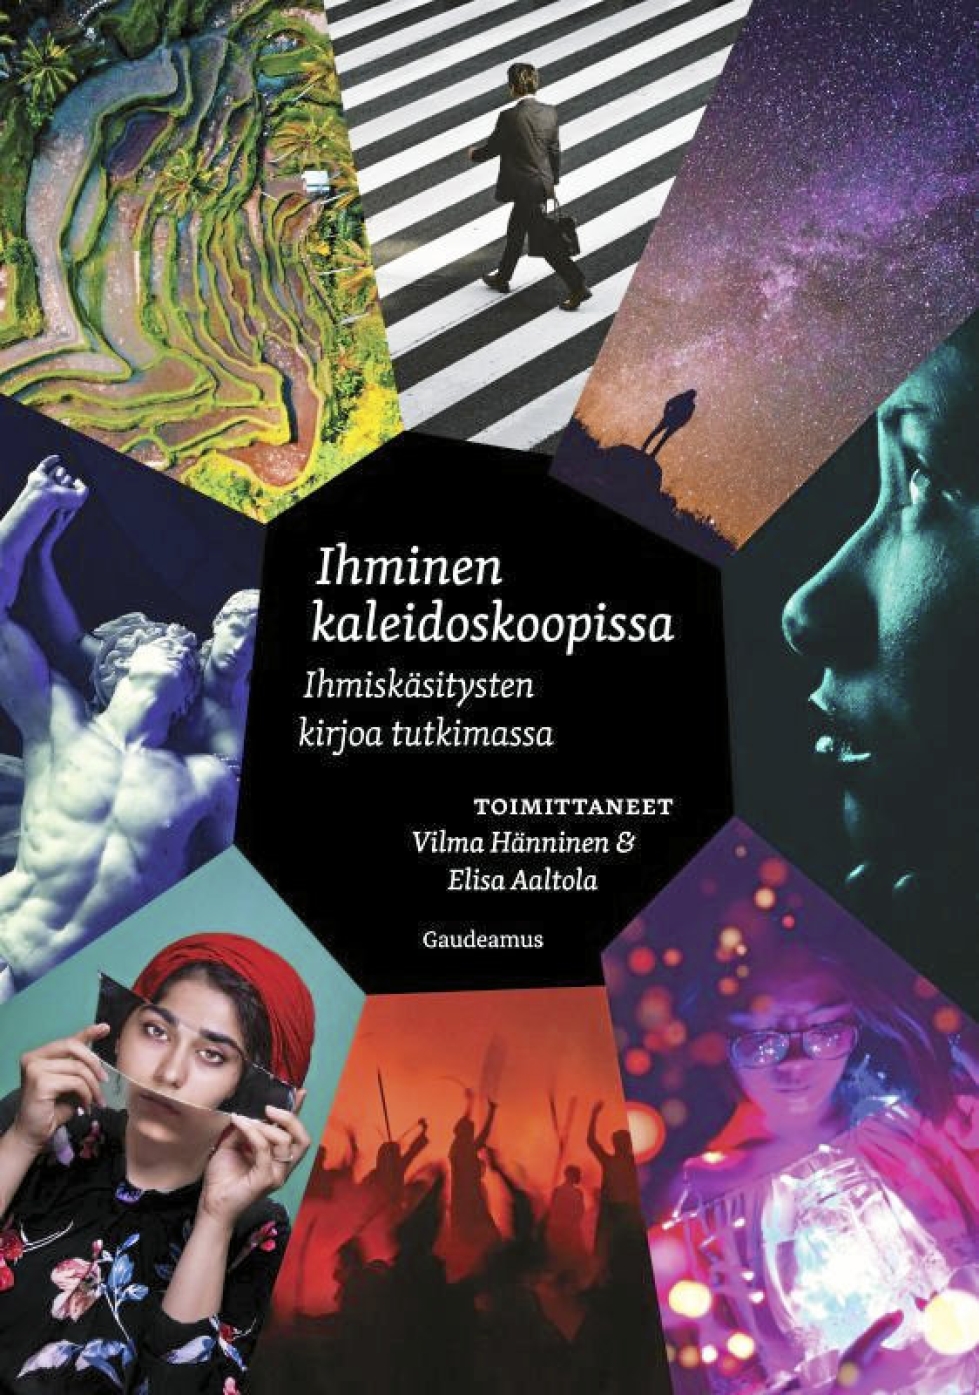 Vilma Hännisen ja Elisa Aaltolan toimittama kirja esittelee hajanaisen mutta korkeatasoisen esseevalikoiman ihmisyydestä.